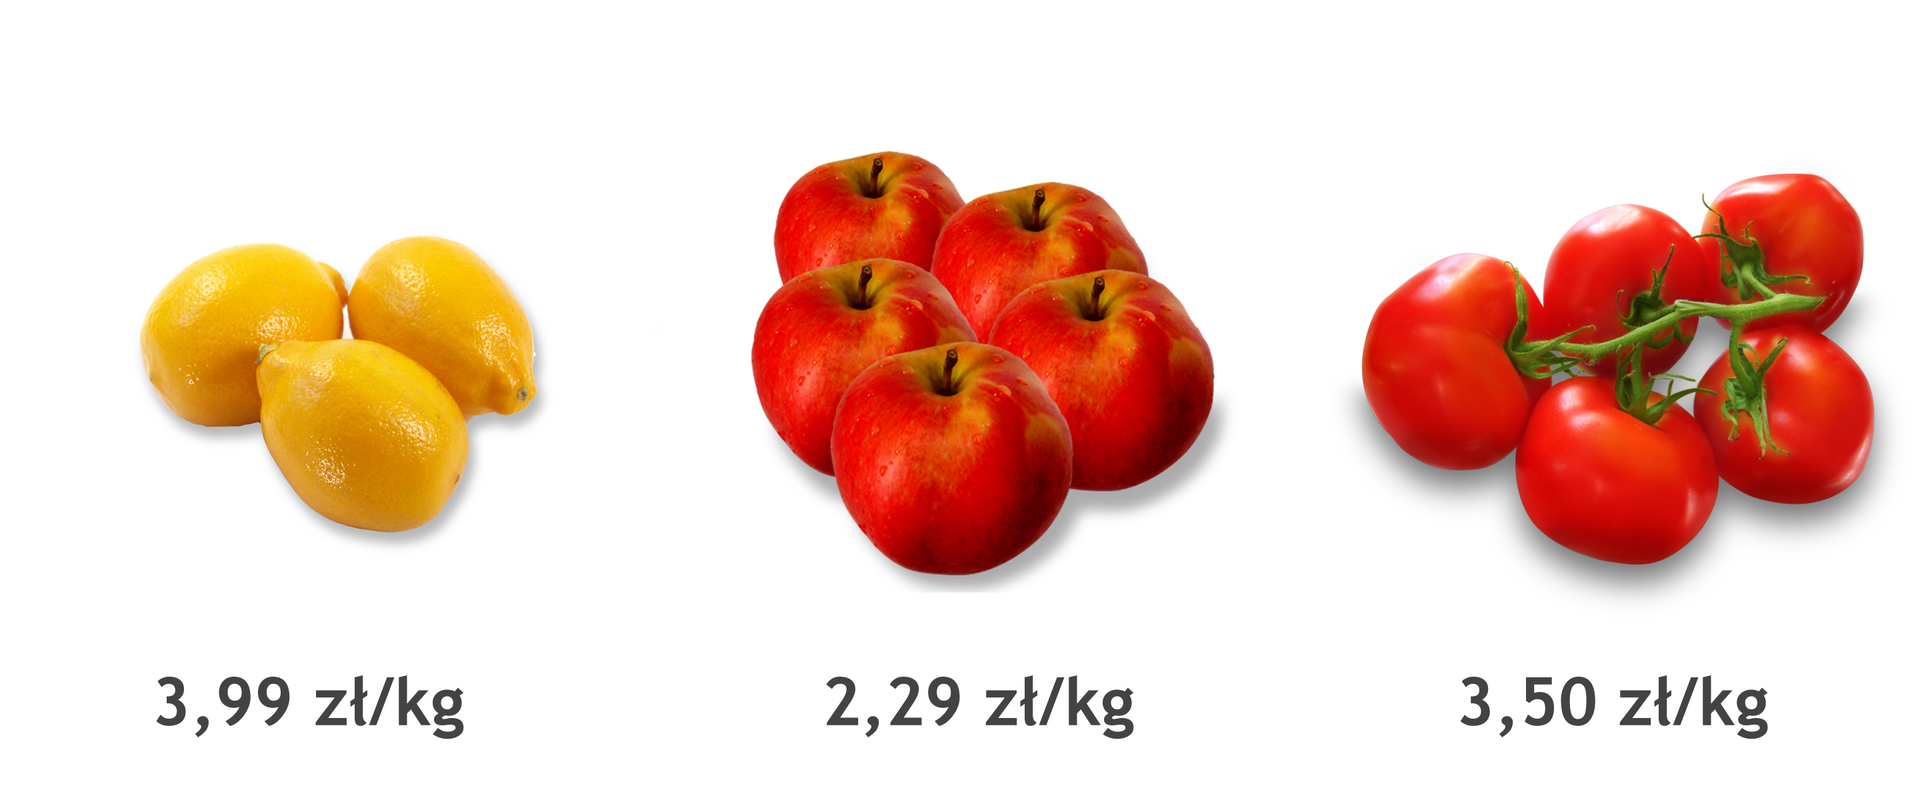 Rysunek cytryny, pomidora i jabłka z podanymi cenami. Cena cytryn 3,99 zł za kilogram. Cena pomidorów 3,50 zł za kilogram. Cena jabłek 2,29 zł za kilogram